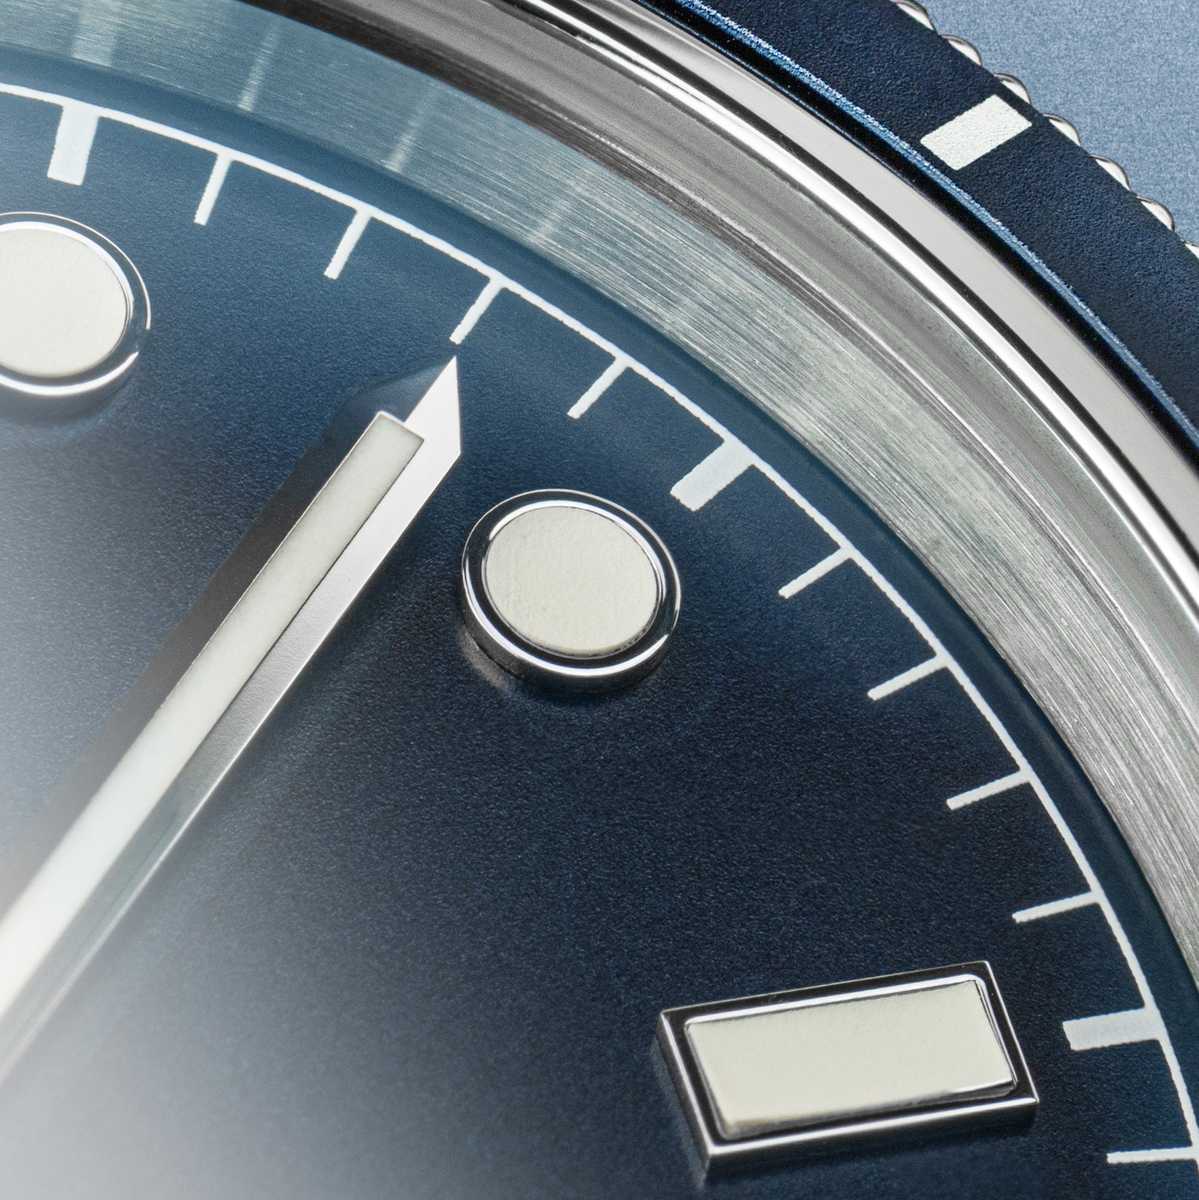 Vue de face du modèle de montre automatique étanche pour homme Concordia avec cadran bleu et bracelet acier